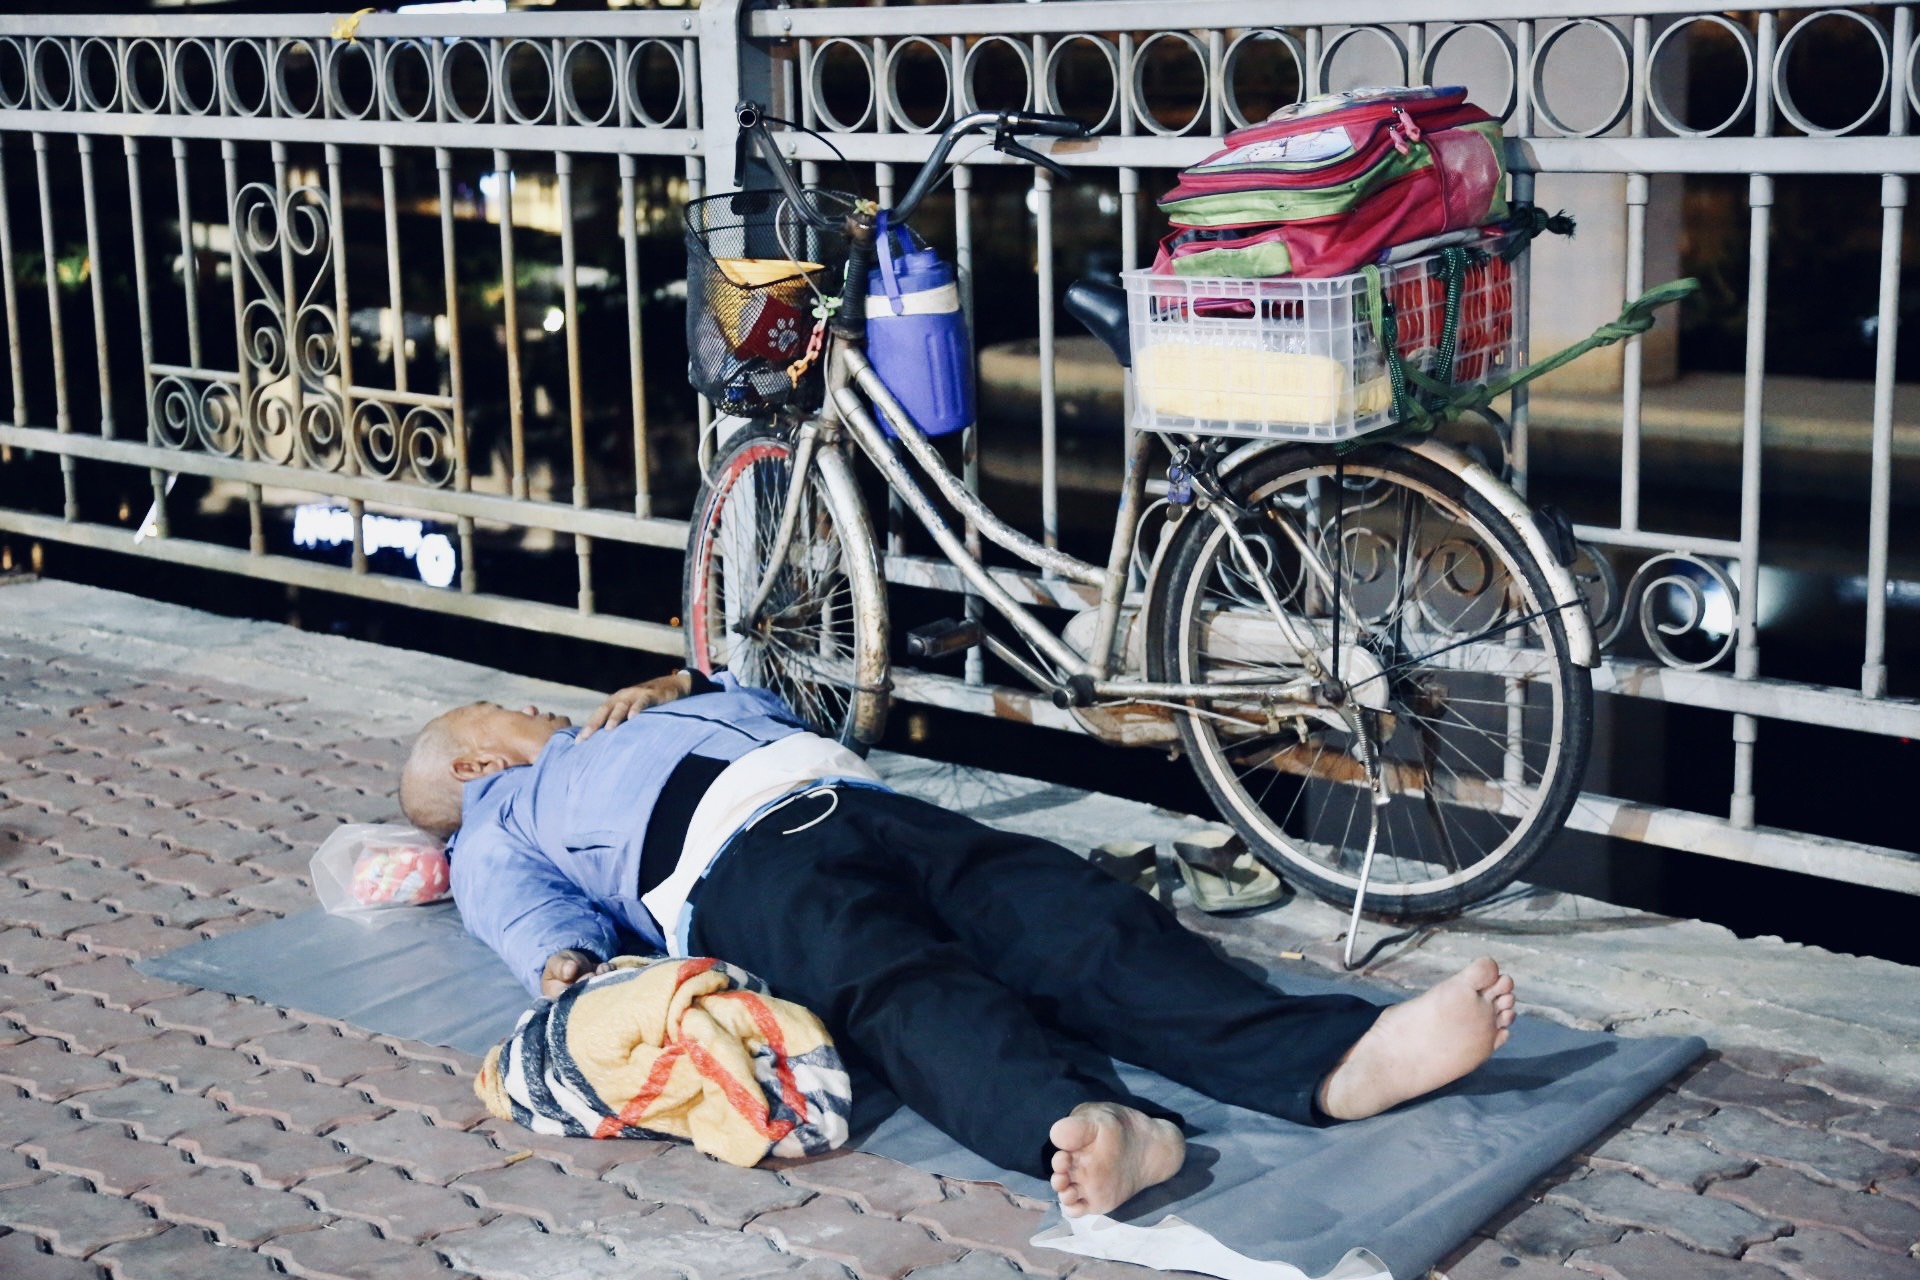 Không có nhà để về, người vô gia cư co ro trong đêm Sài Gòn ngày cận Tết - Ảnh 1.